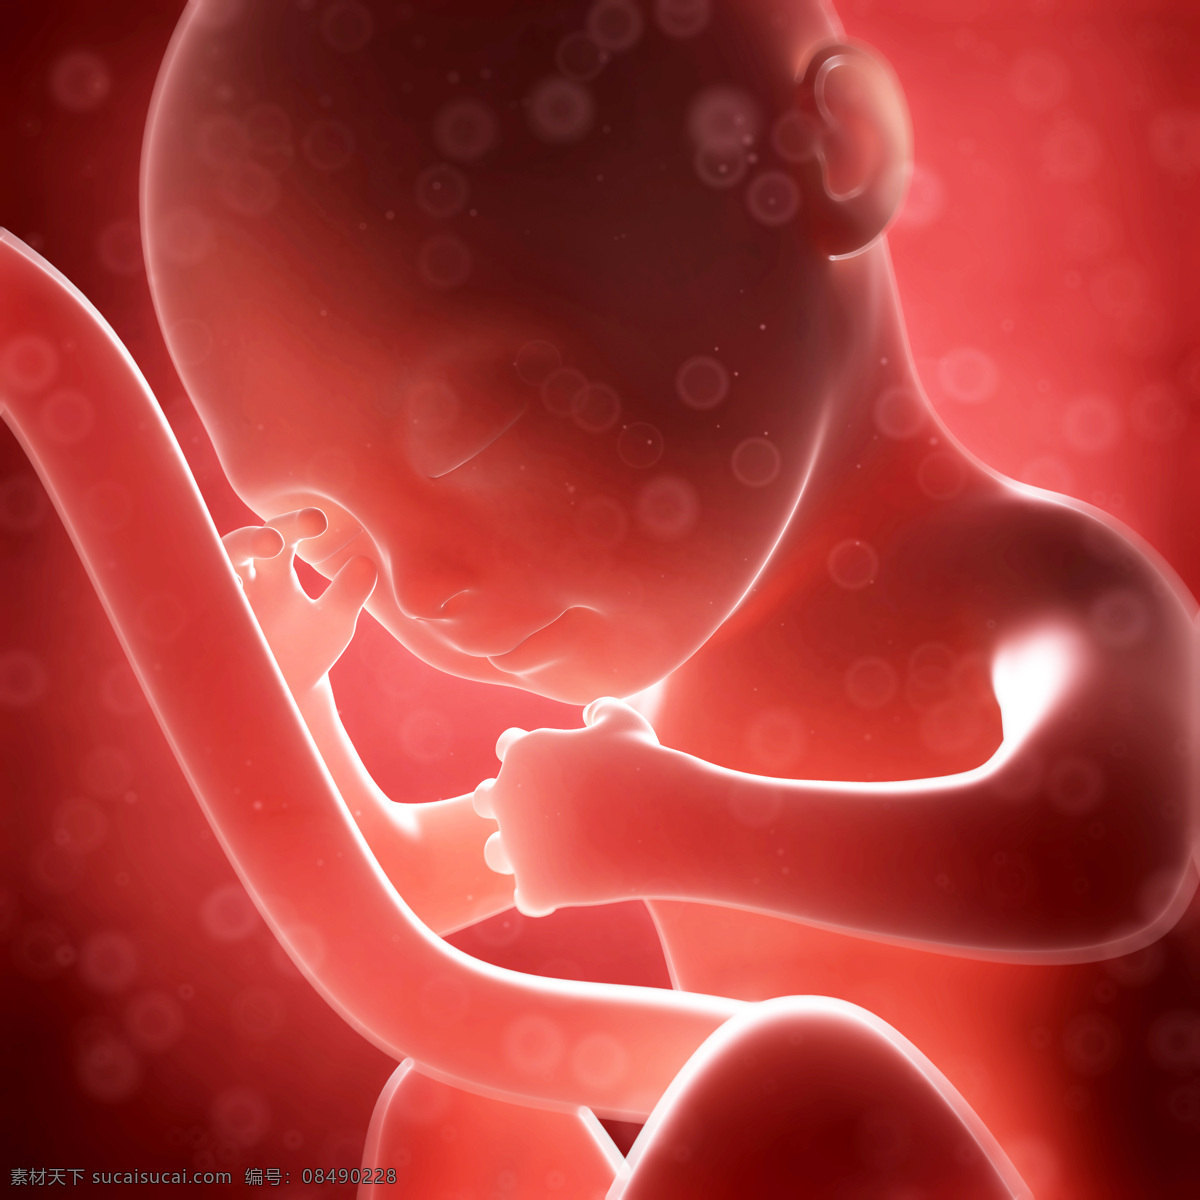 脐带 连接 婴儿 胎儿 孕育 胚胎发育 儿童图片 人物图片